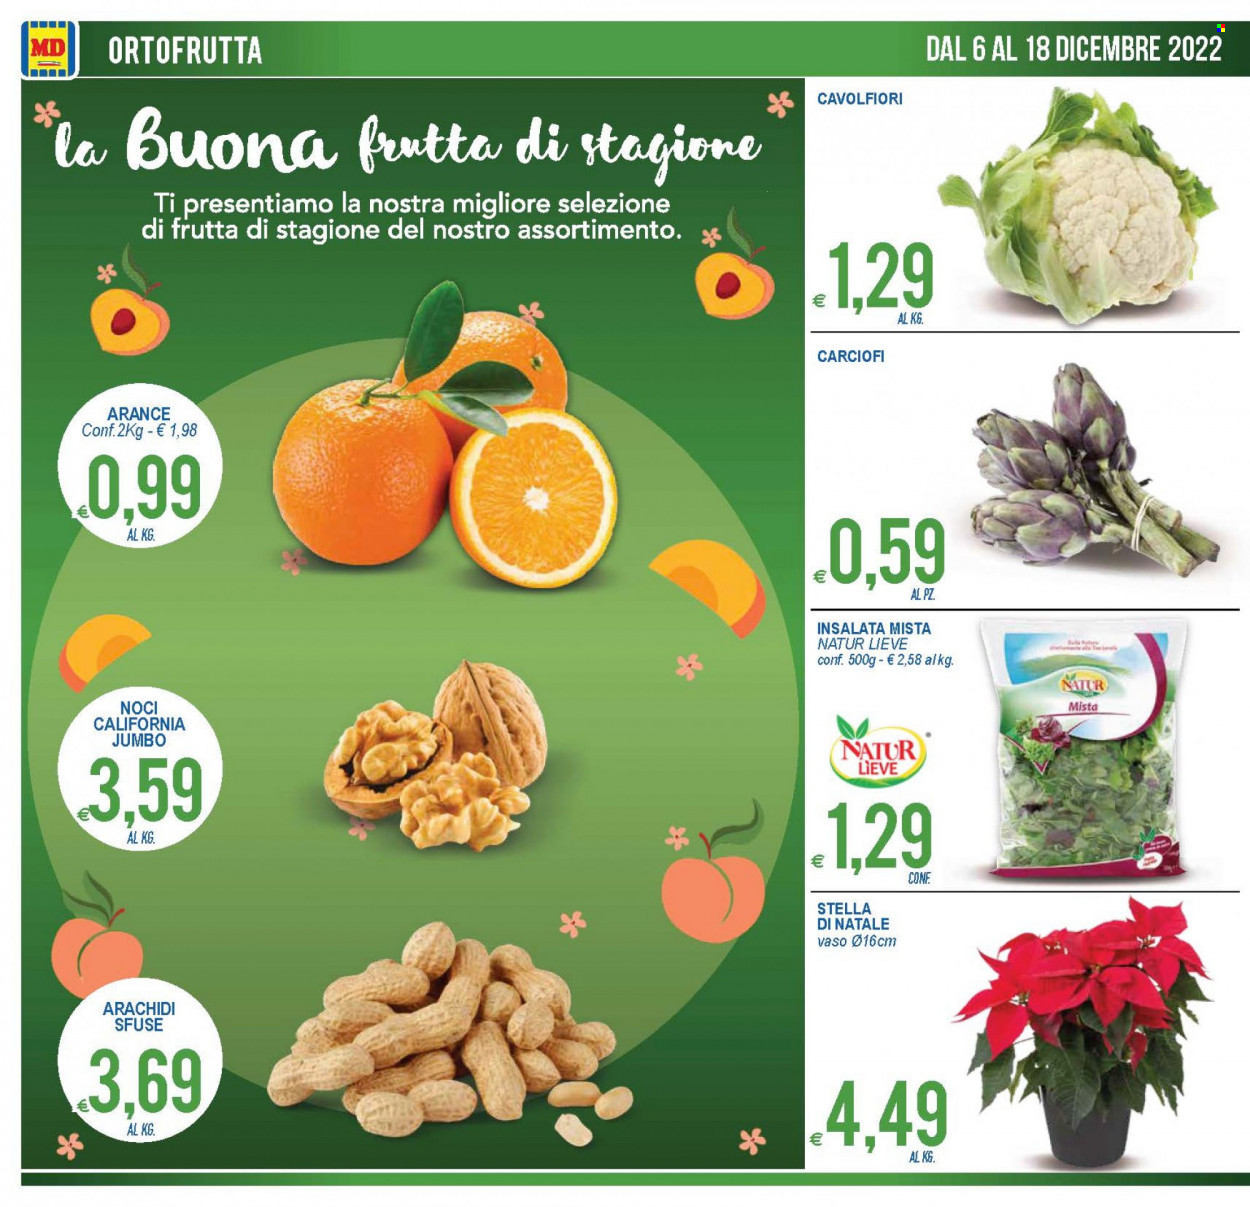 thumbnail - Volantino MD Discount - 6/12/2022 - 18/12/2022 - Prodotti in offerta - insalata mista, carciofi, cavolfiore, arance, arachidi, noci, stella di natale. Pagina 8.